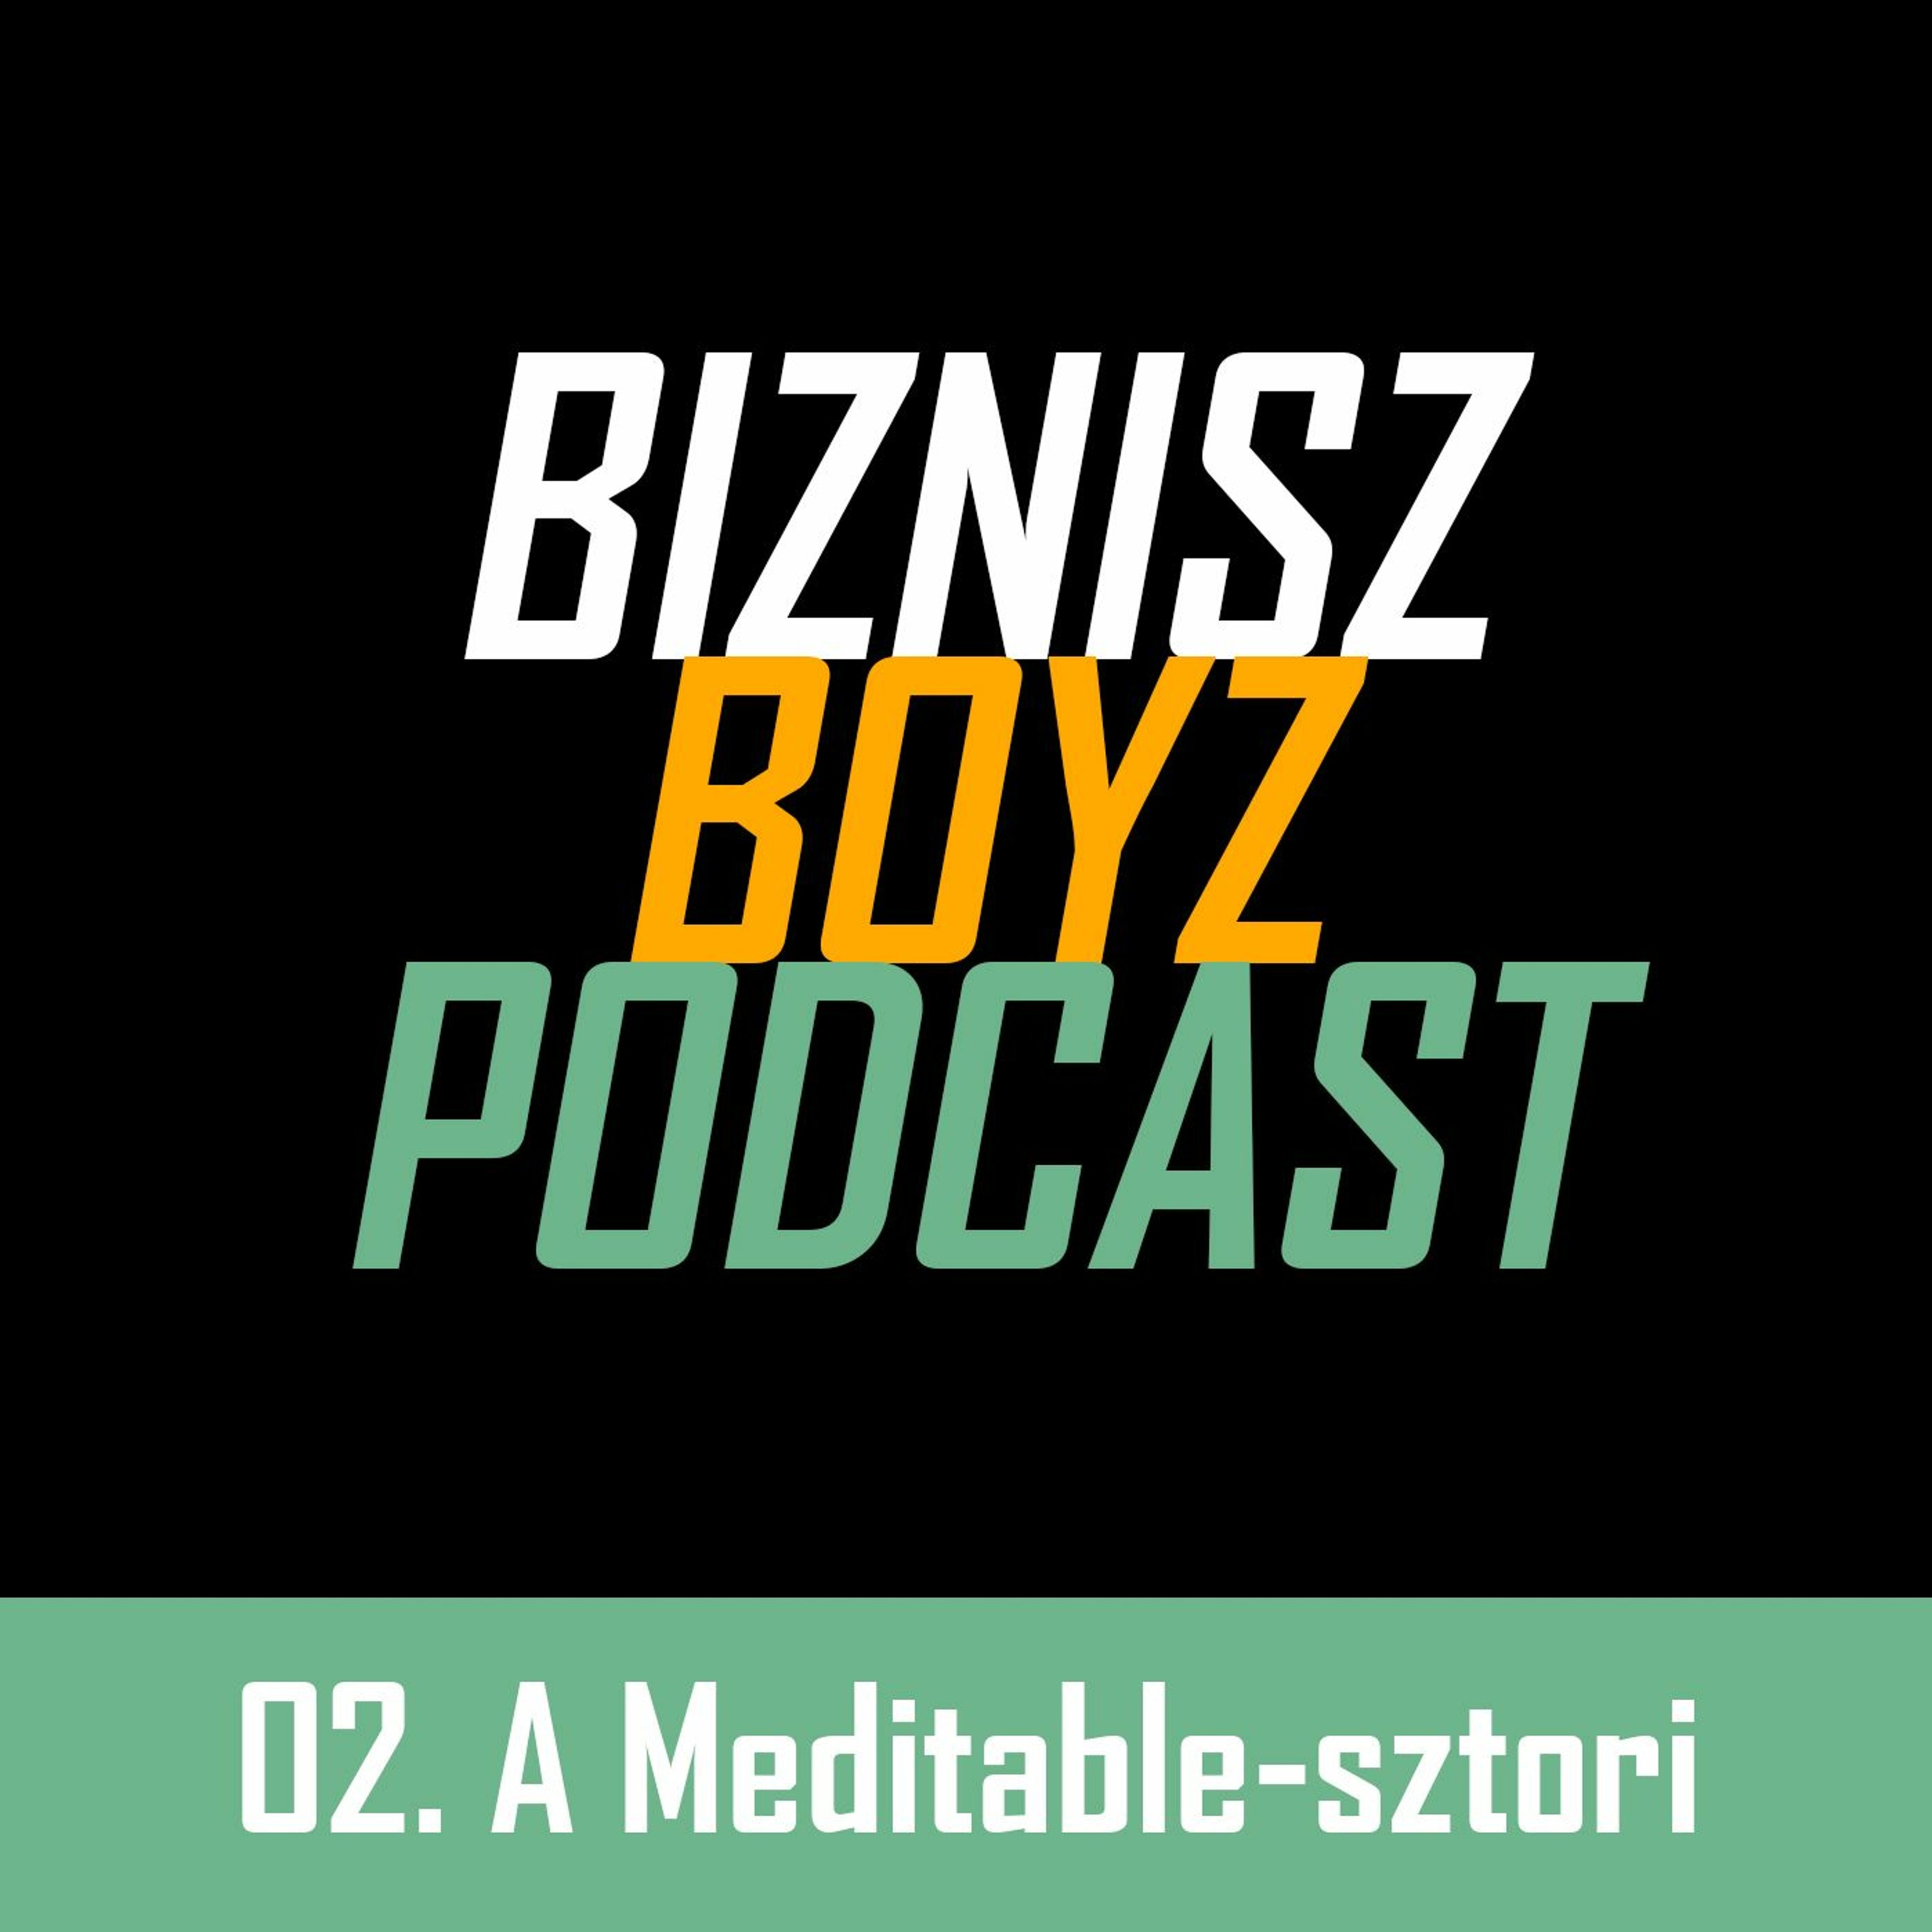 2. Meditációs app fejlesztése, app marketing és befektetés: a Meditable-sztori | Biznisz Boyz